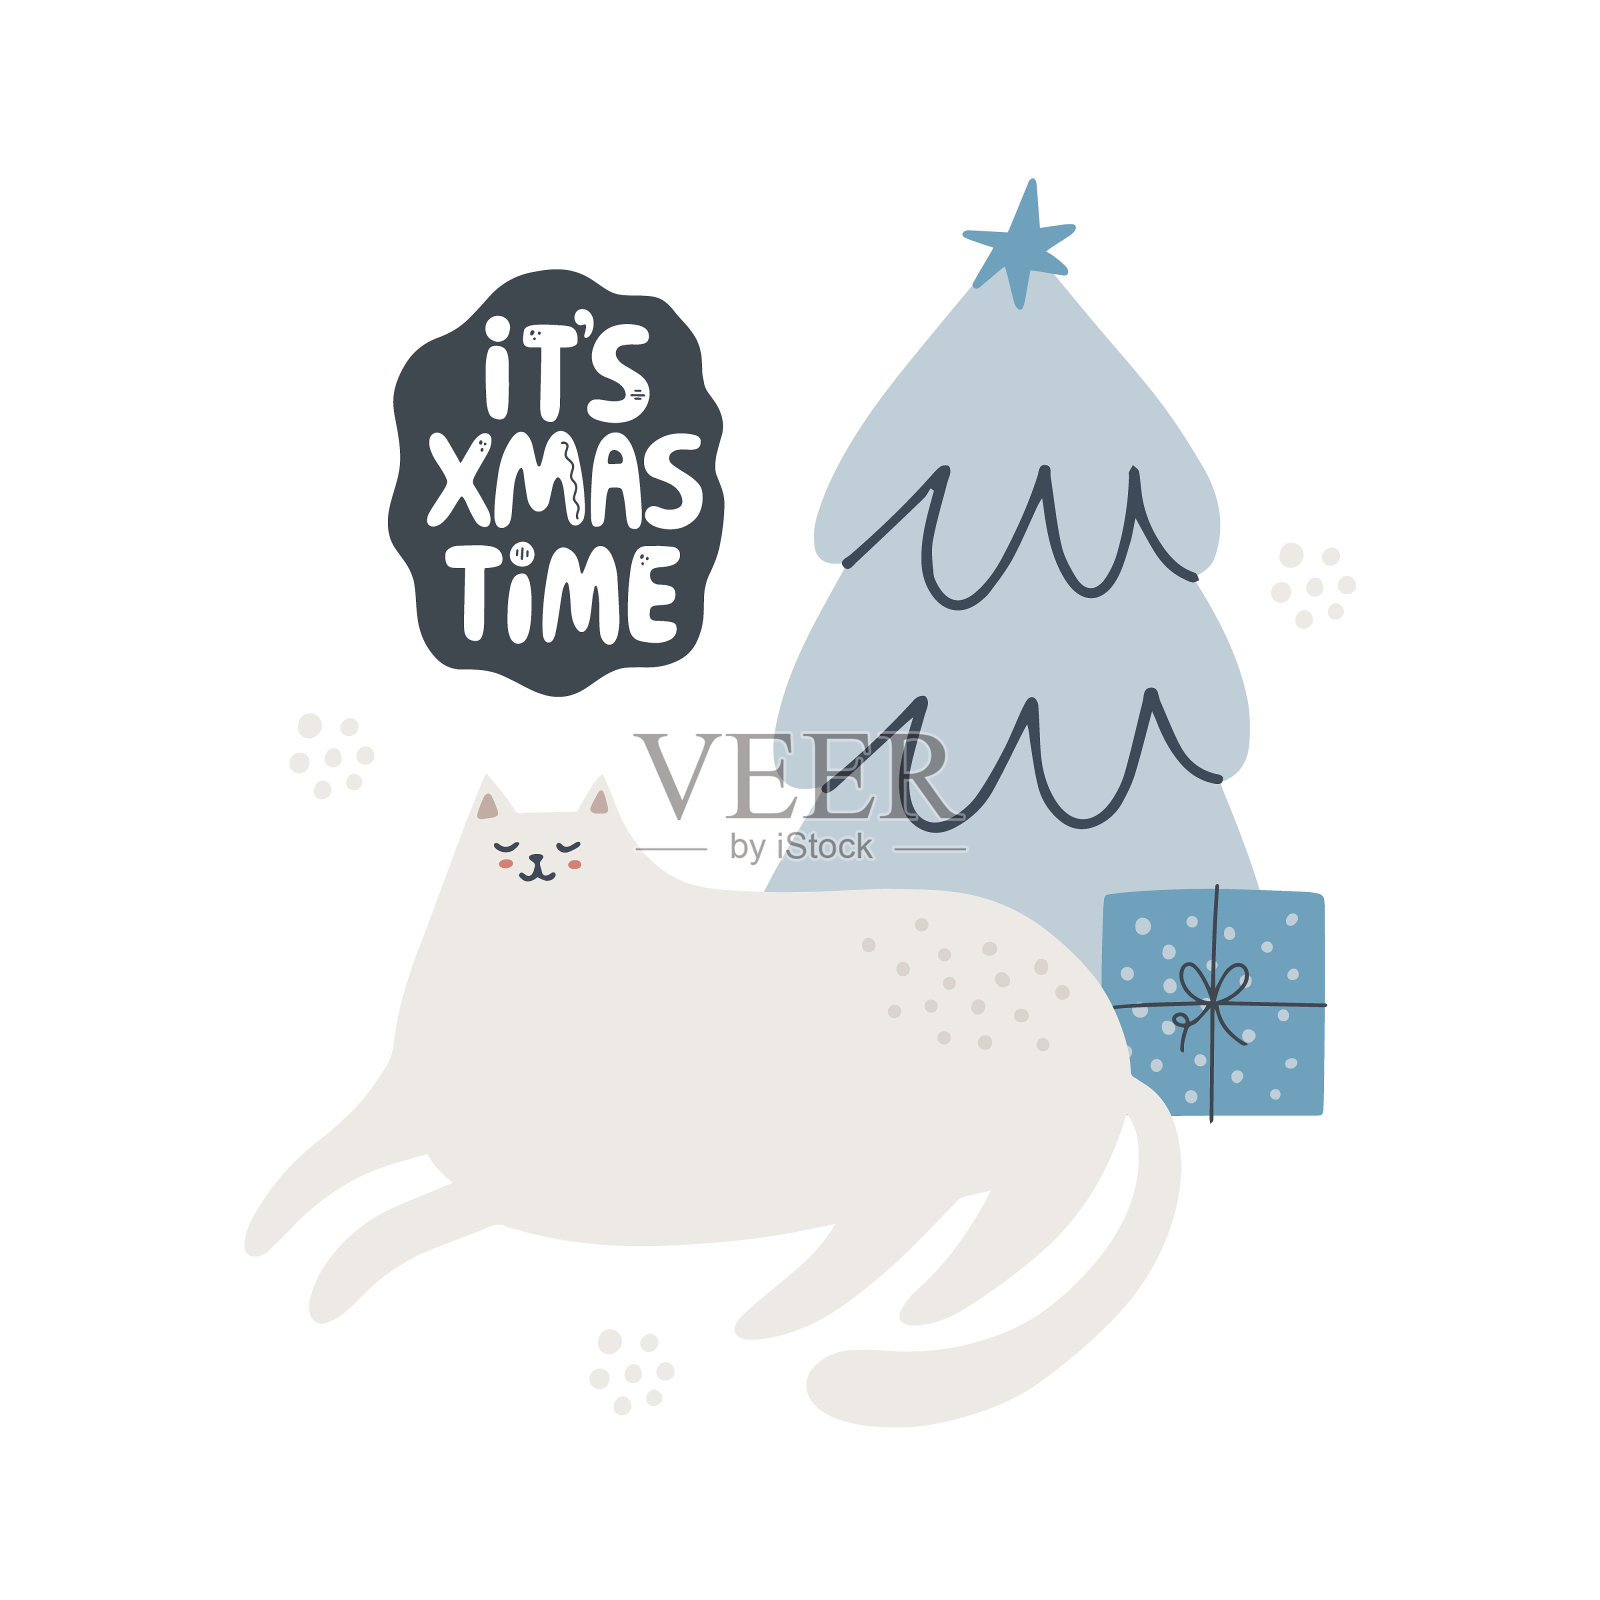 可爱的猫在圣诞树附近。手绘矢量插图。现在是圣诞节写信的时候了。贺卡模板插画图片素材